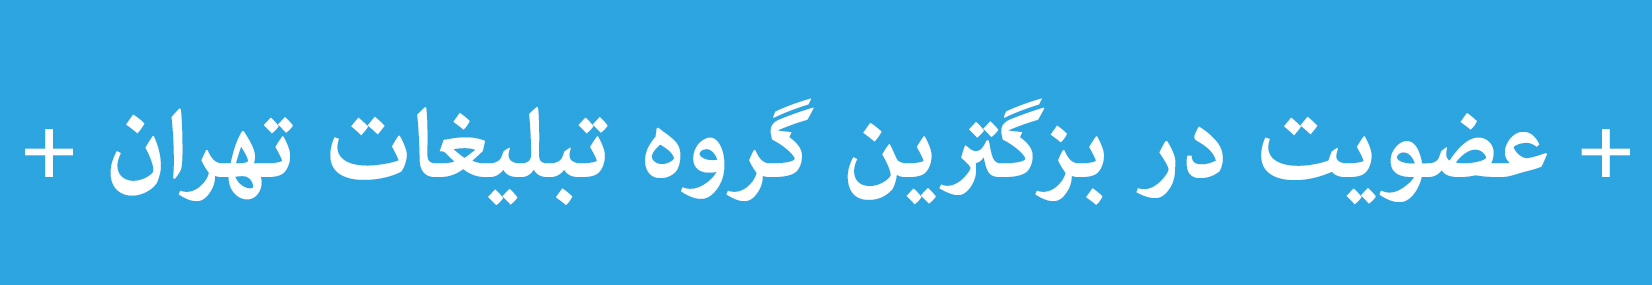 عضویت در بزگترین گروه تبلیغات تهران